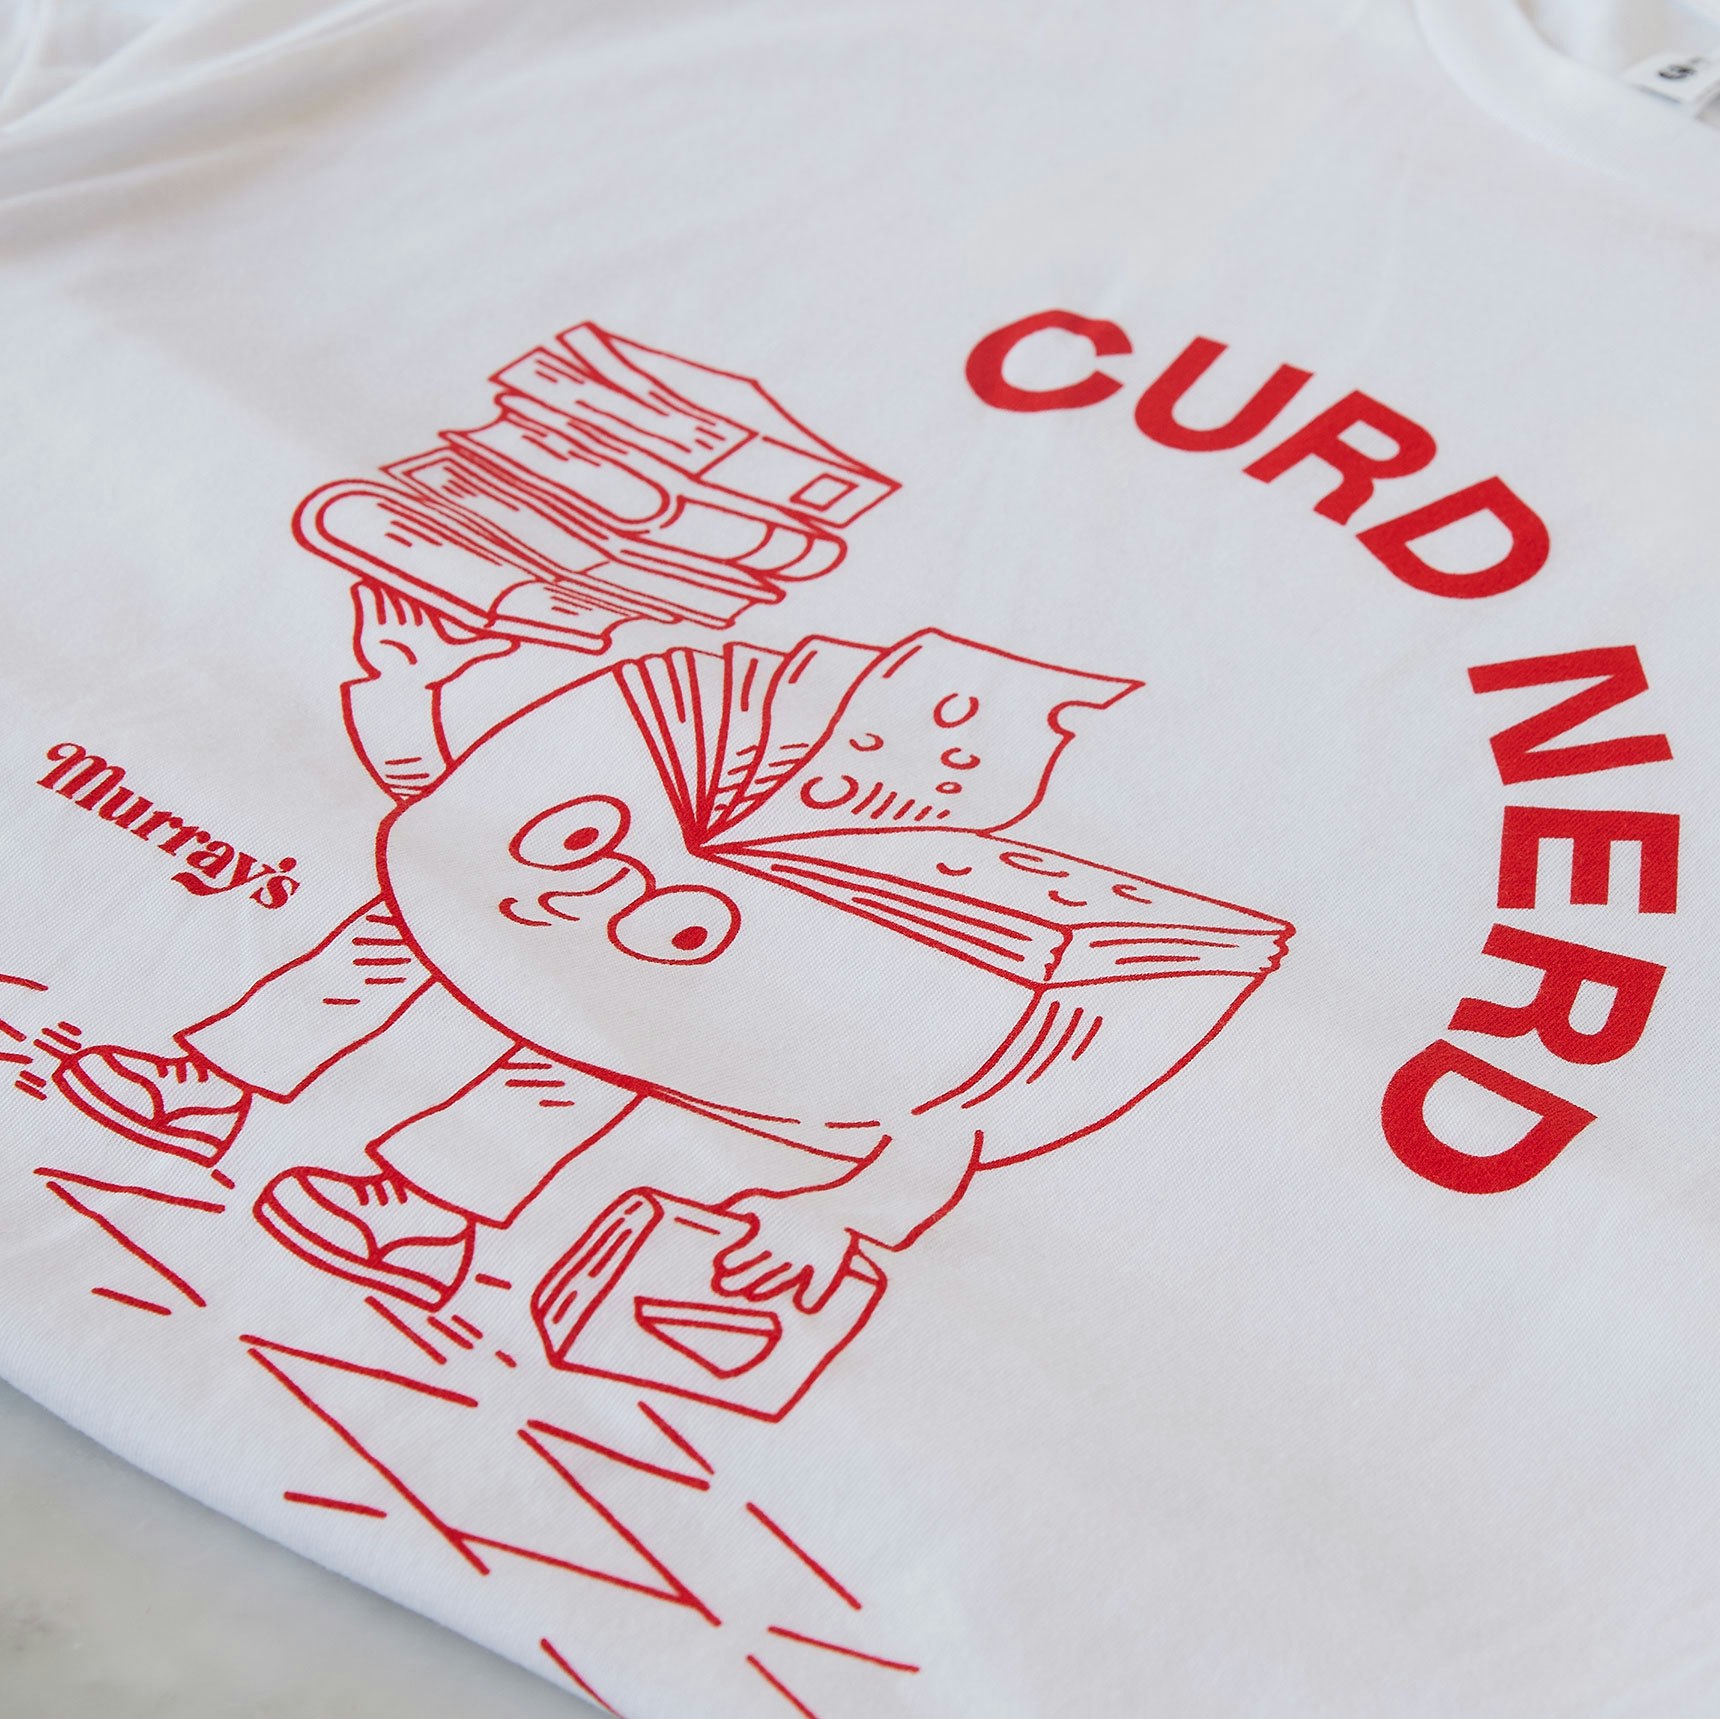 Murray's Curd Nerd T-Shirt